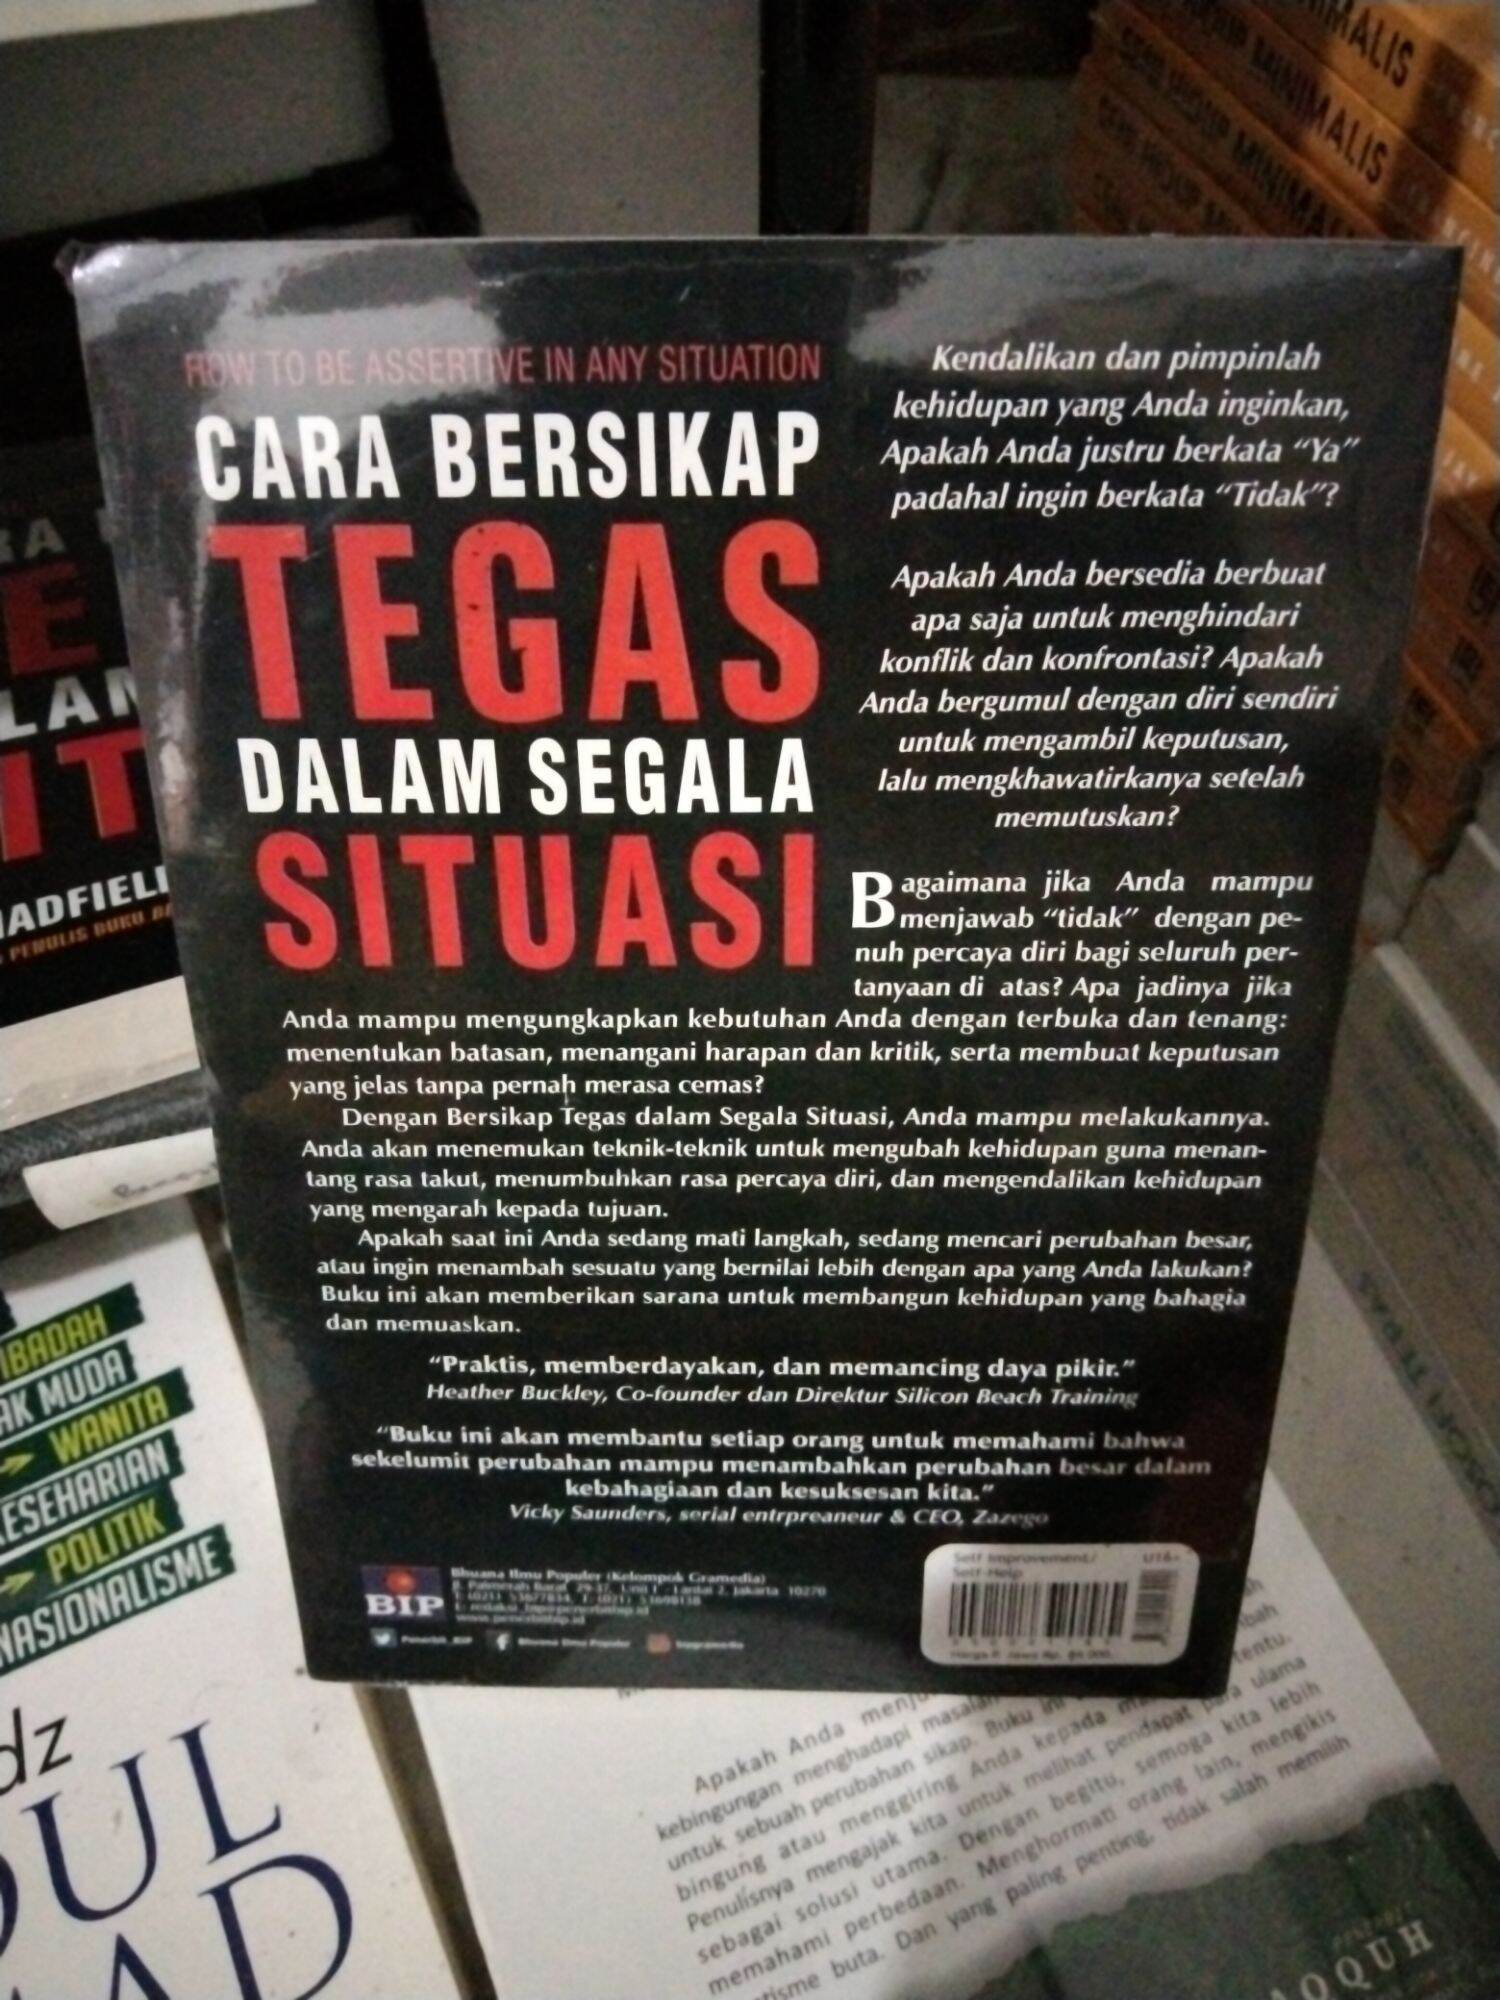 buku cara bersikap tegas dalam segala situasi -sue | Lazada Indonesia